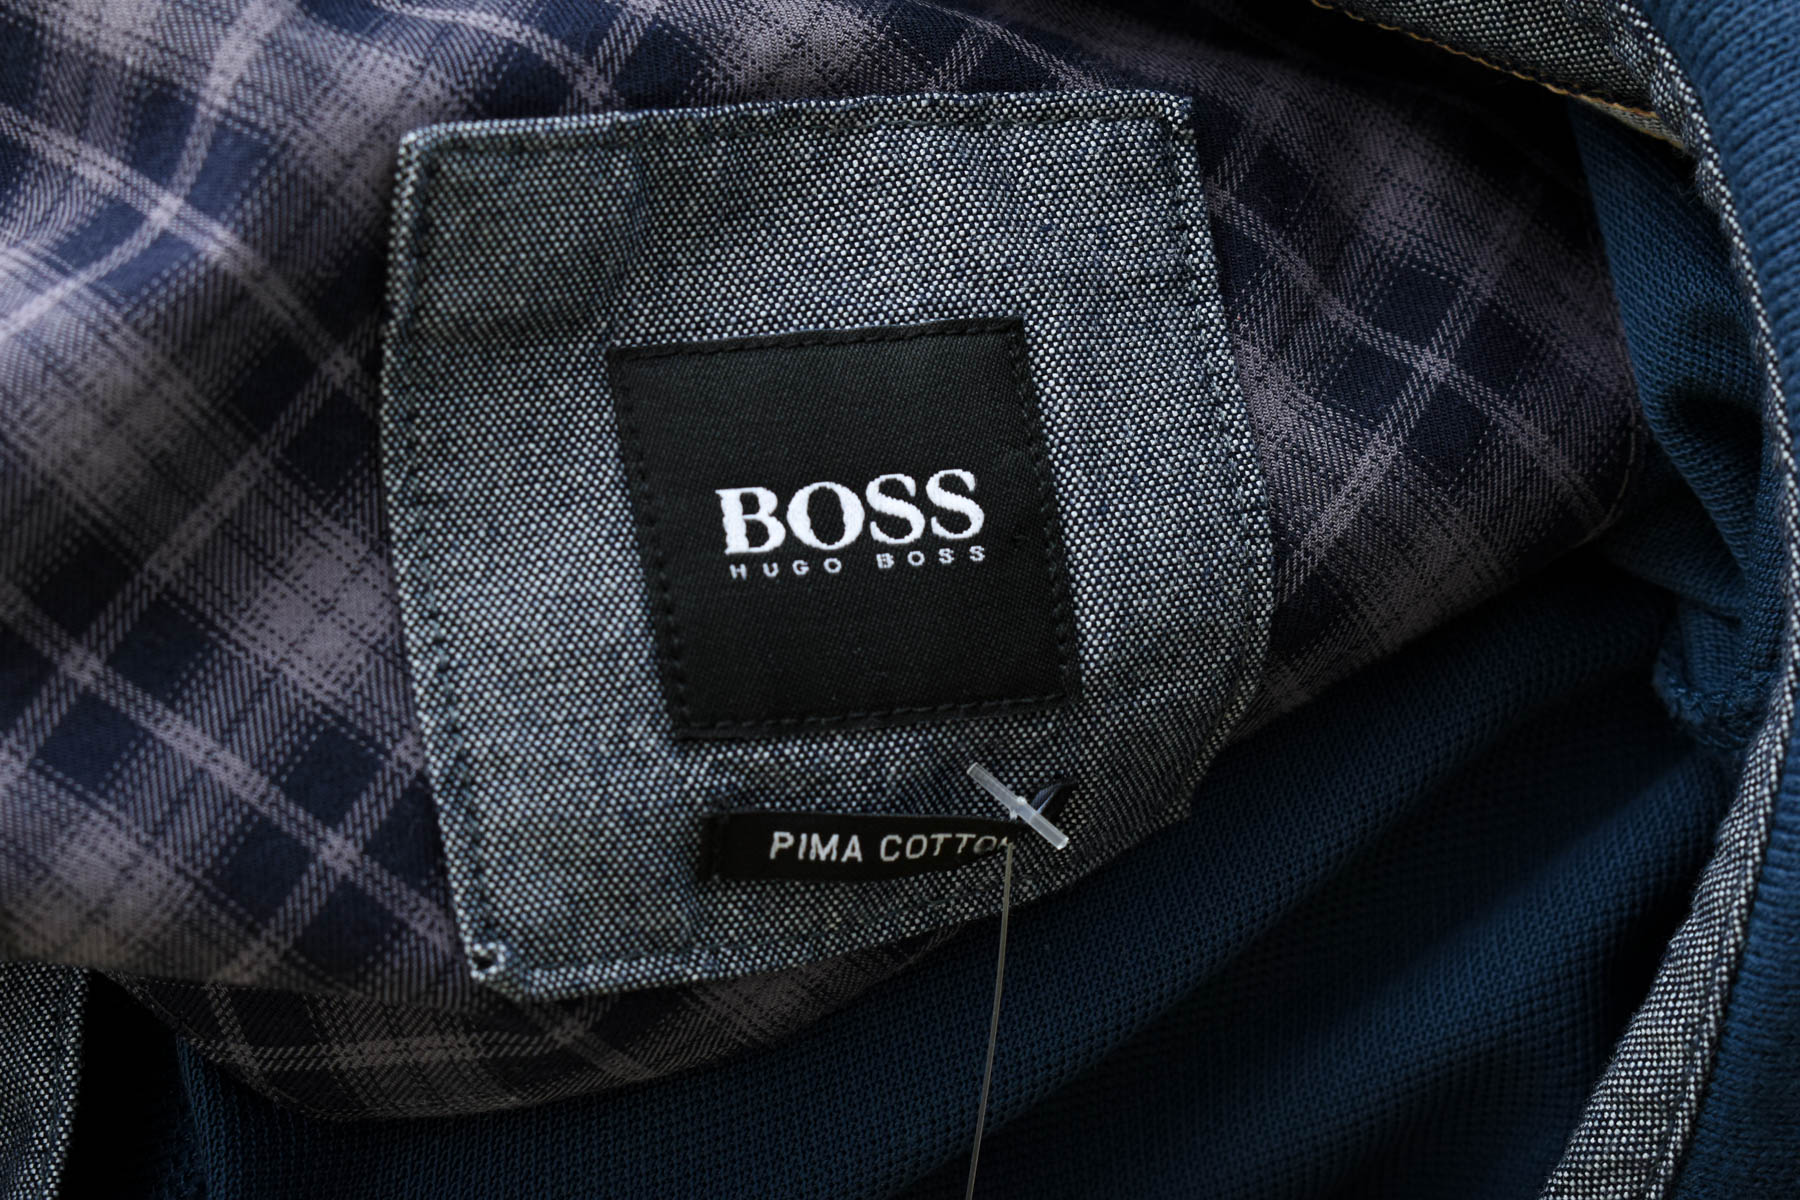 Men's blouse - HUGO BOSS - 2